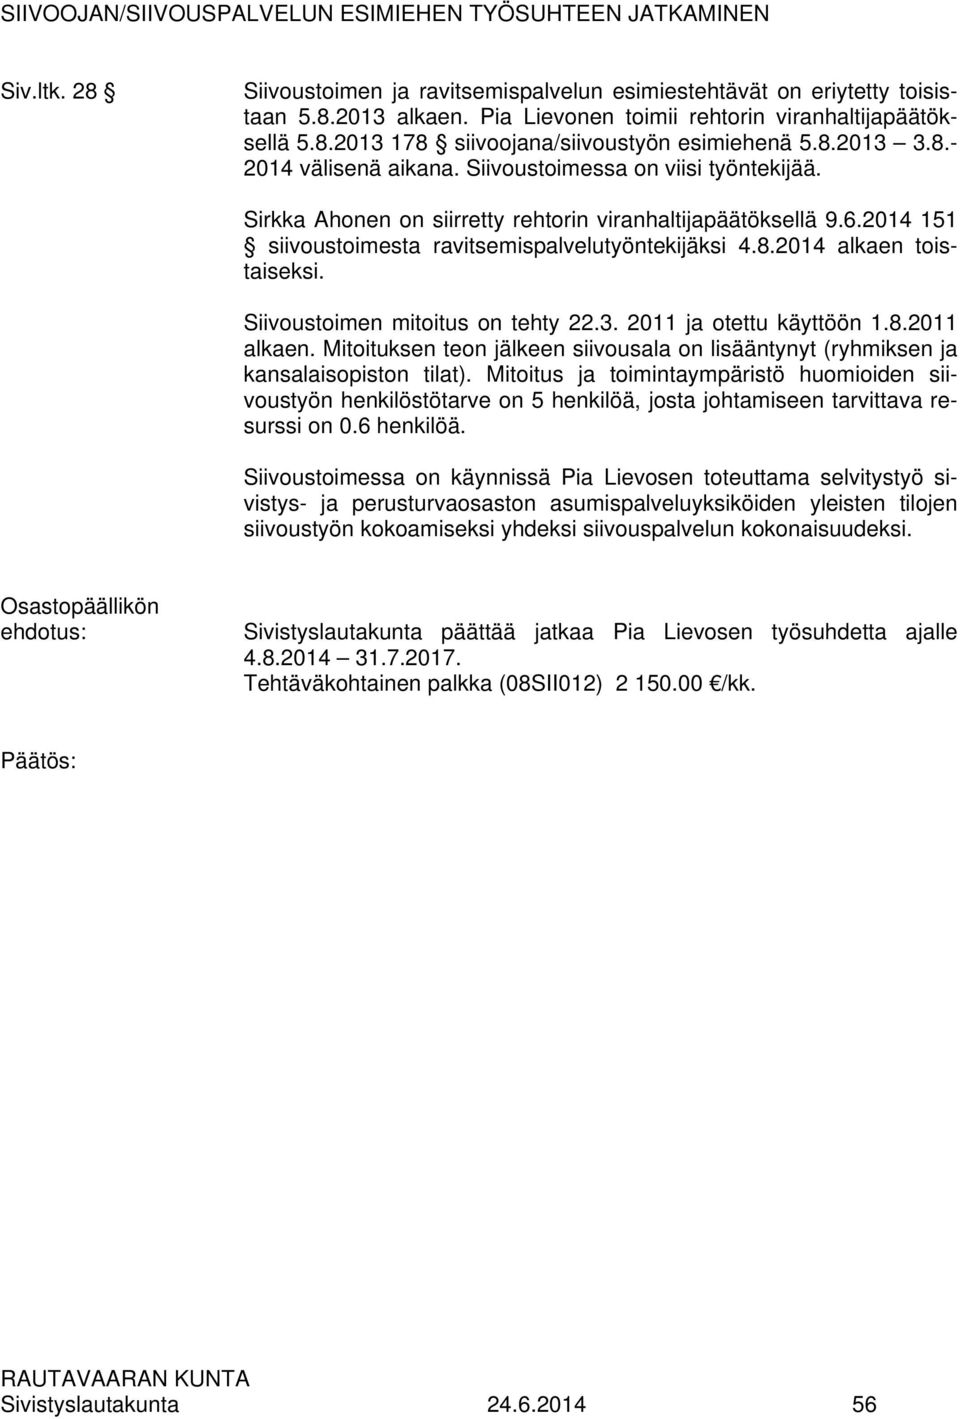 Sirkka Ahonen on siirretty rehtorin viranhaltijapäätöksellä 9.6.2014 151 siivoustoimesta ravitsemispalvelutyöntekijäksi 4.8.2014 alkaen toistaiseksi. Siivoustoimen mitoitus on tehty 22.3.